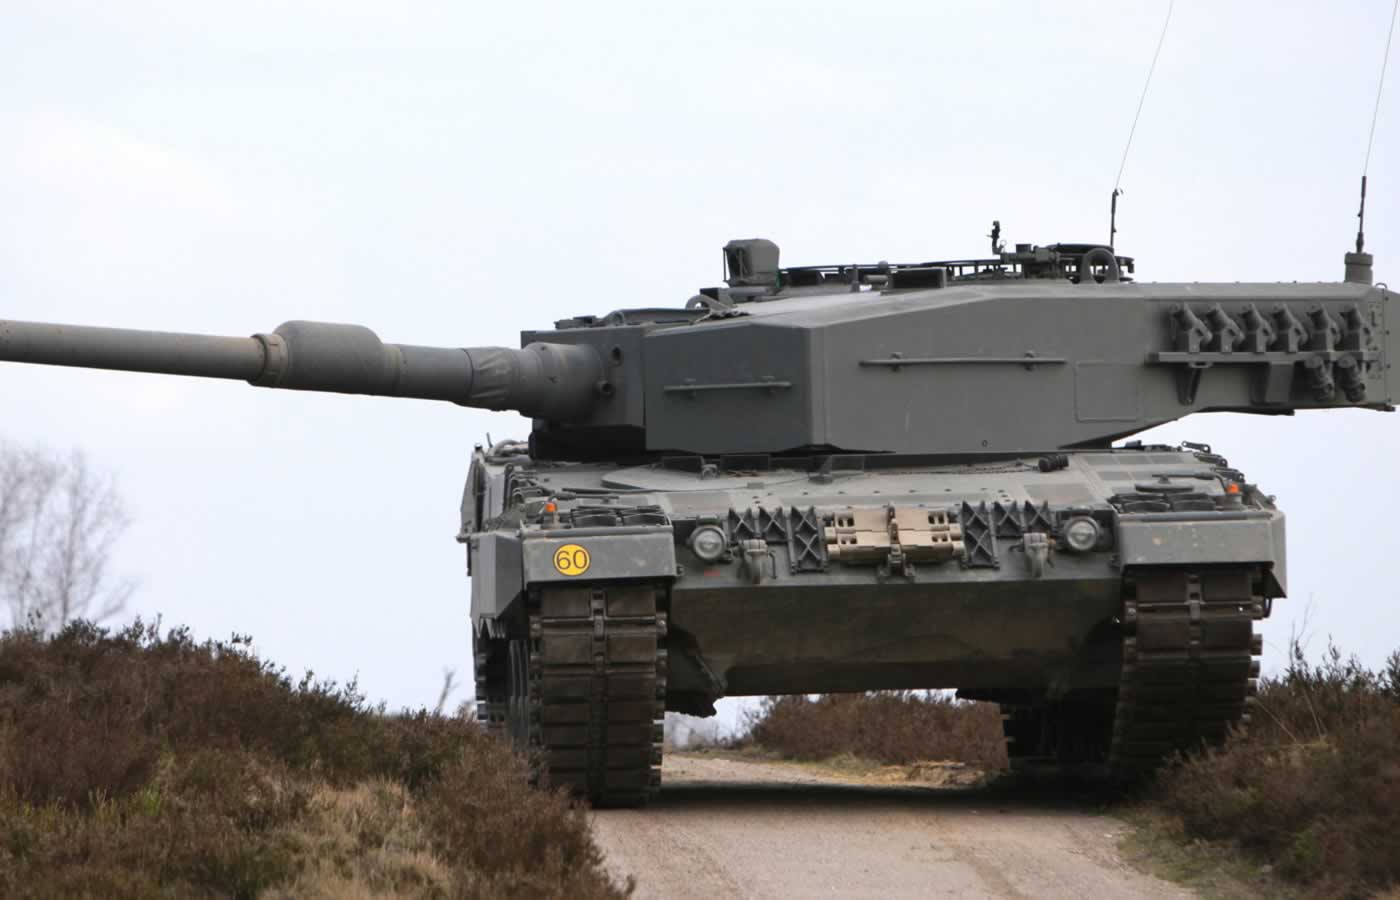 Σύμφωνα με δημοσίευμα της εφημερίδας El Pais σήμερα, η Ισπανία σχεδιάζει να στείλει 4 έως 6 γερμανικής κατασκευής άρματα μάχης Leopard 2A4 στην Ουκρανία, επικαλούμενη κυβερνητικές πηγές που δεν κατονομάζονται.